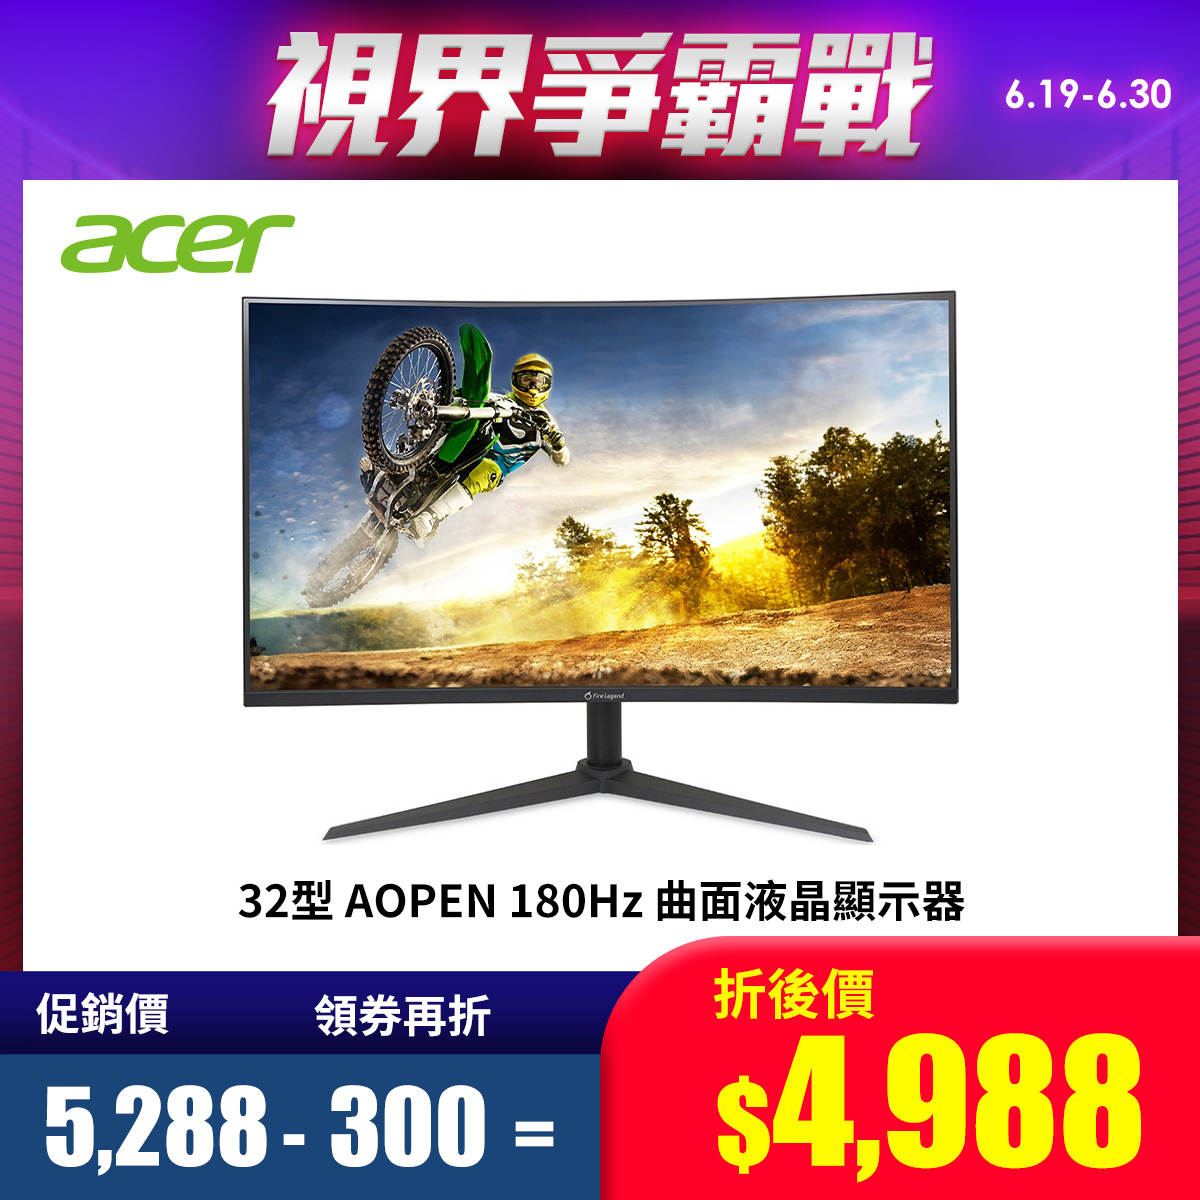 宏碁 Acer 32型 AOPEN 180hz 曲面液晶顯示器